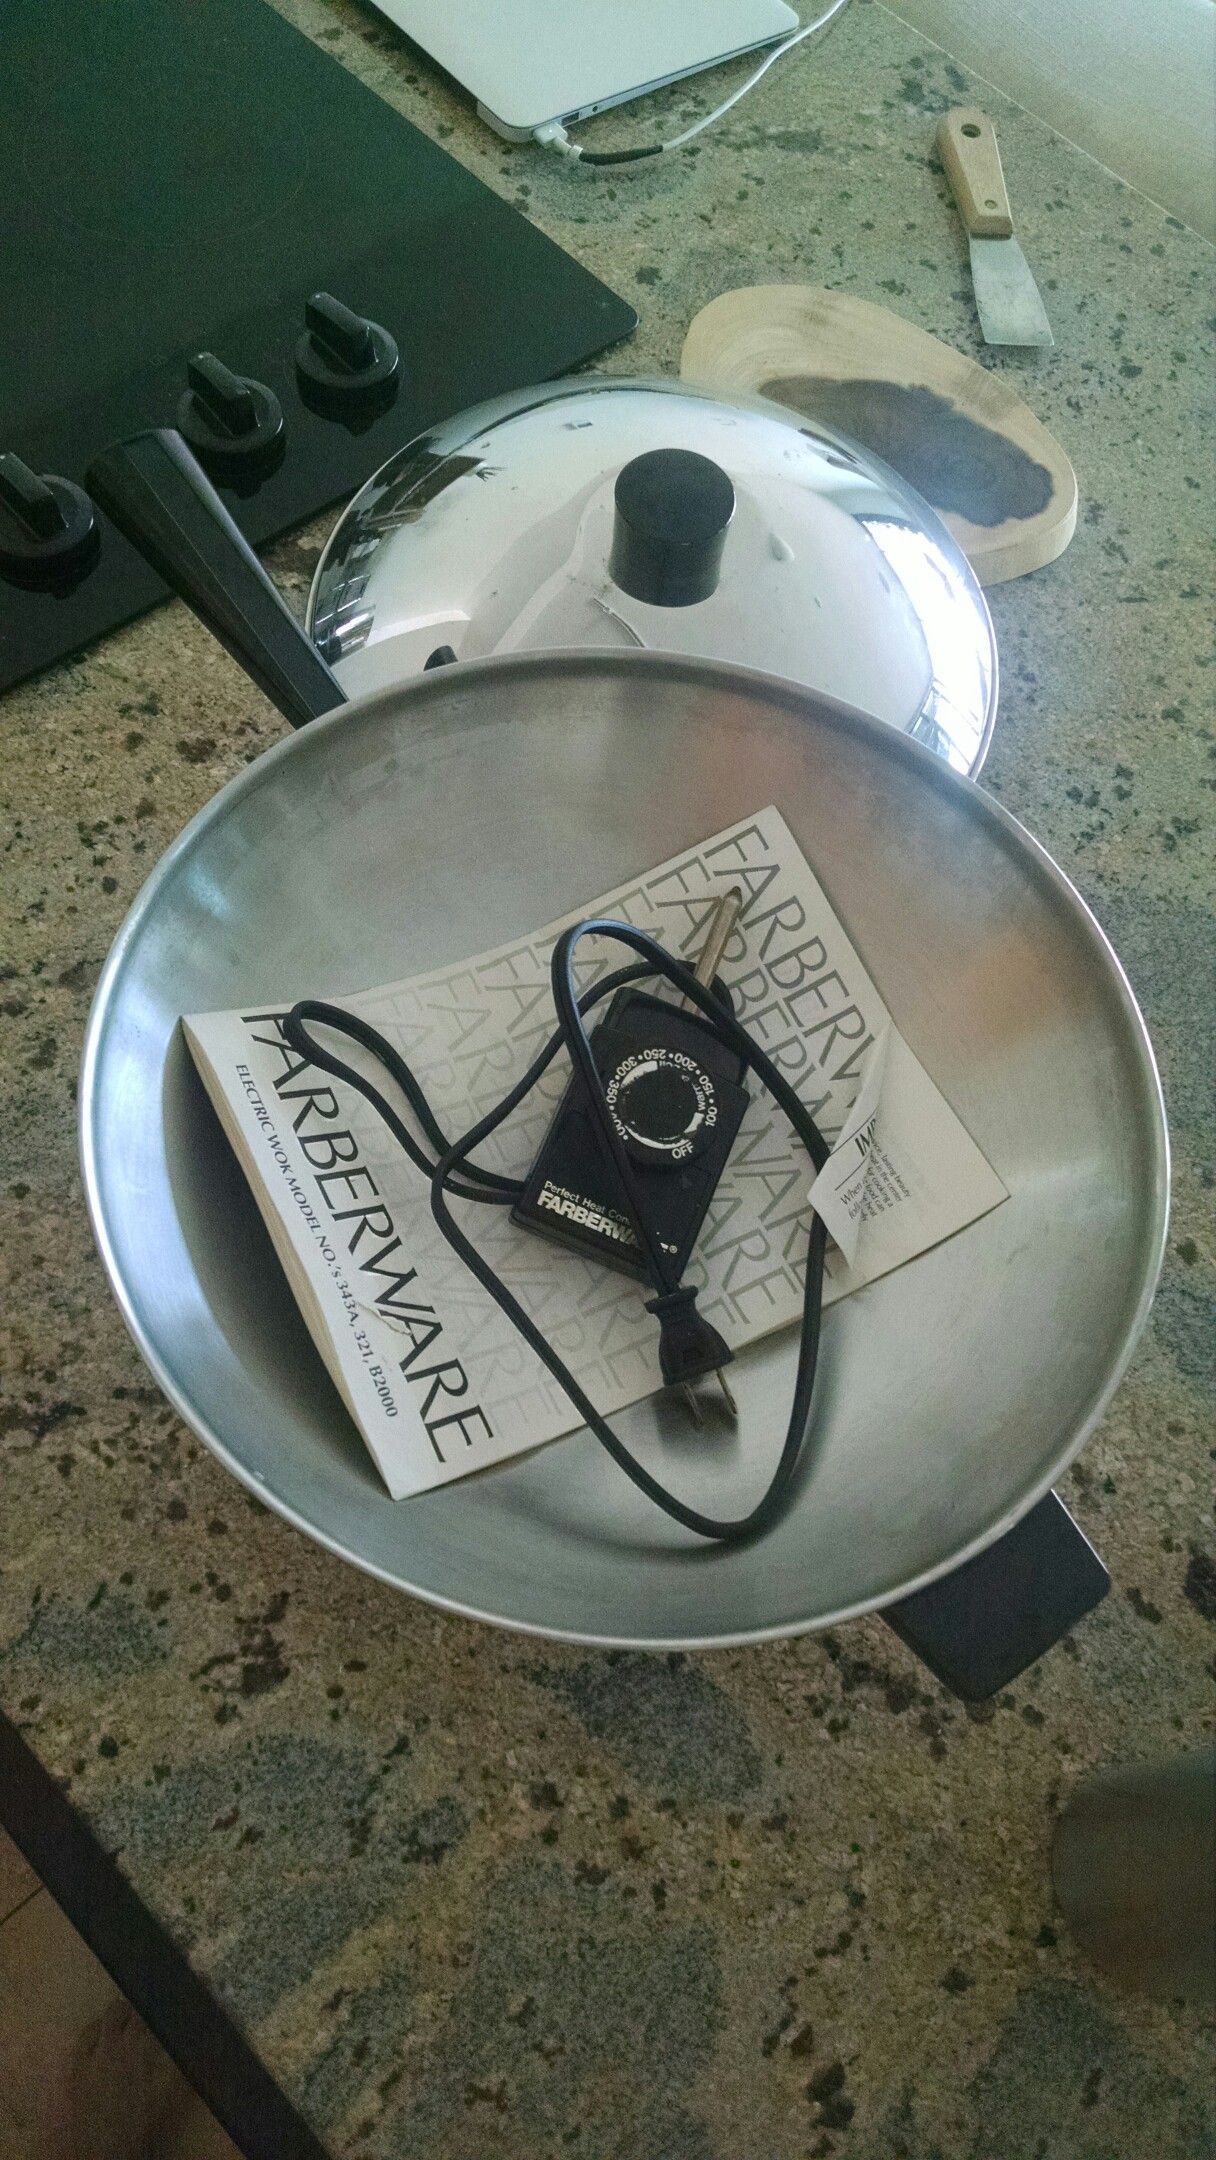 Farberware electric wok